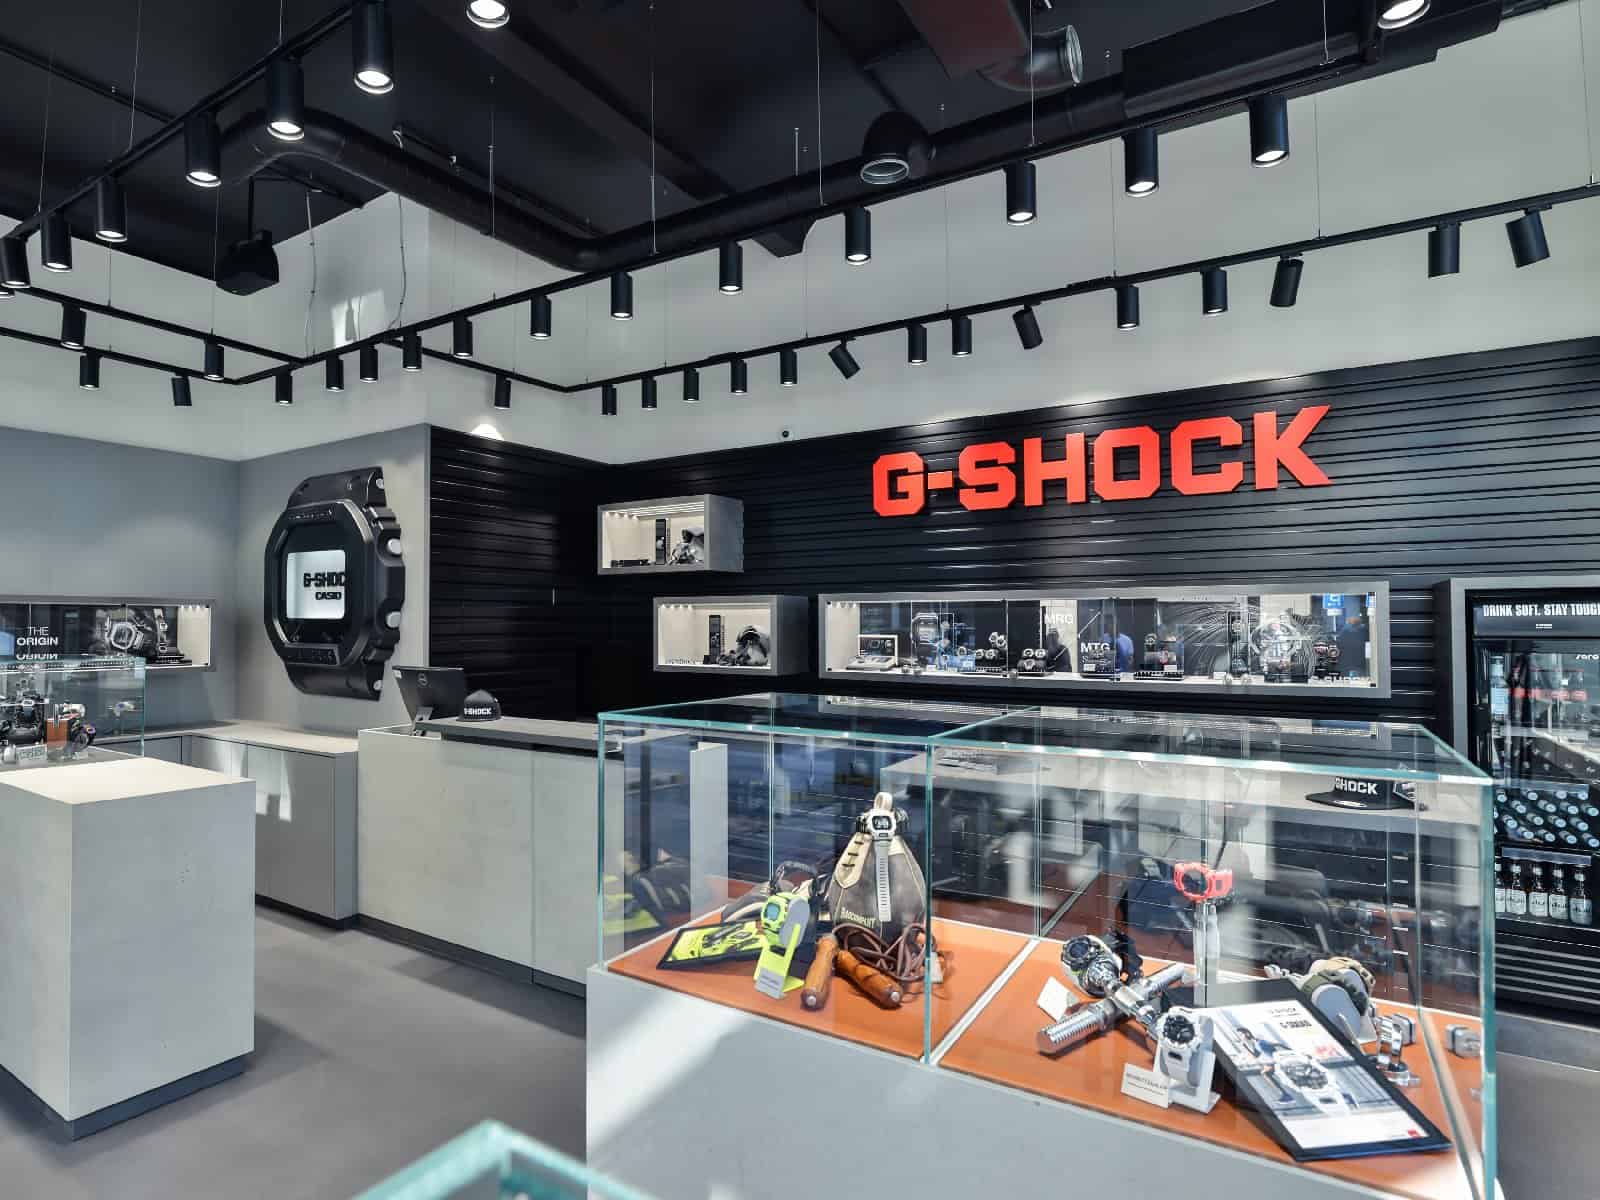 Exklusiver G-Shock Verkaufsraum in Hamburg